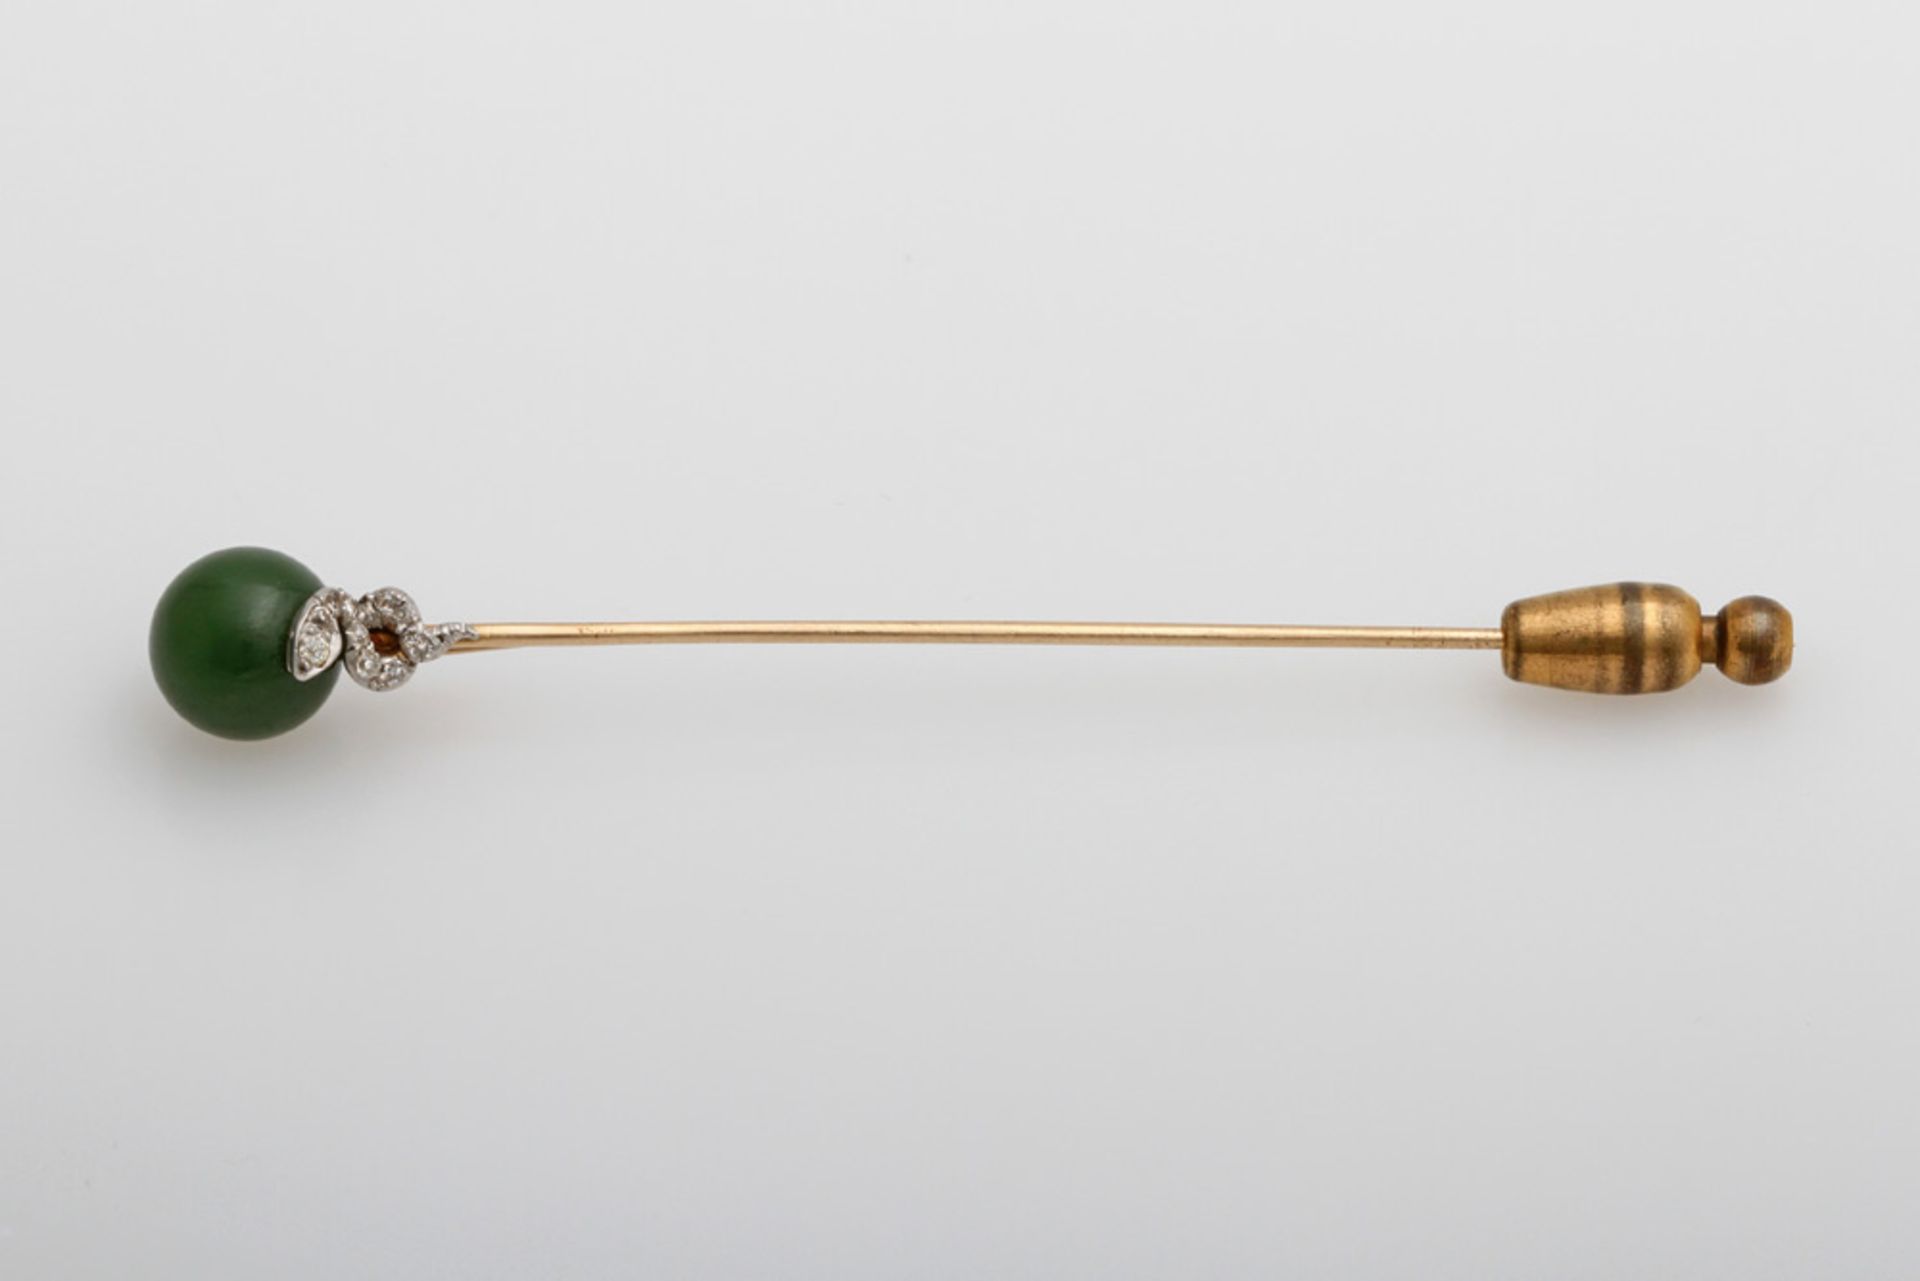 Krawatten-/Reversnadel 1920er Jahre "Schlange" besetzt mit kl. Diam. und einer Jade-Kugel, GG 14K (